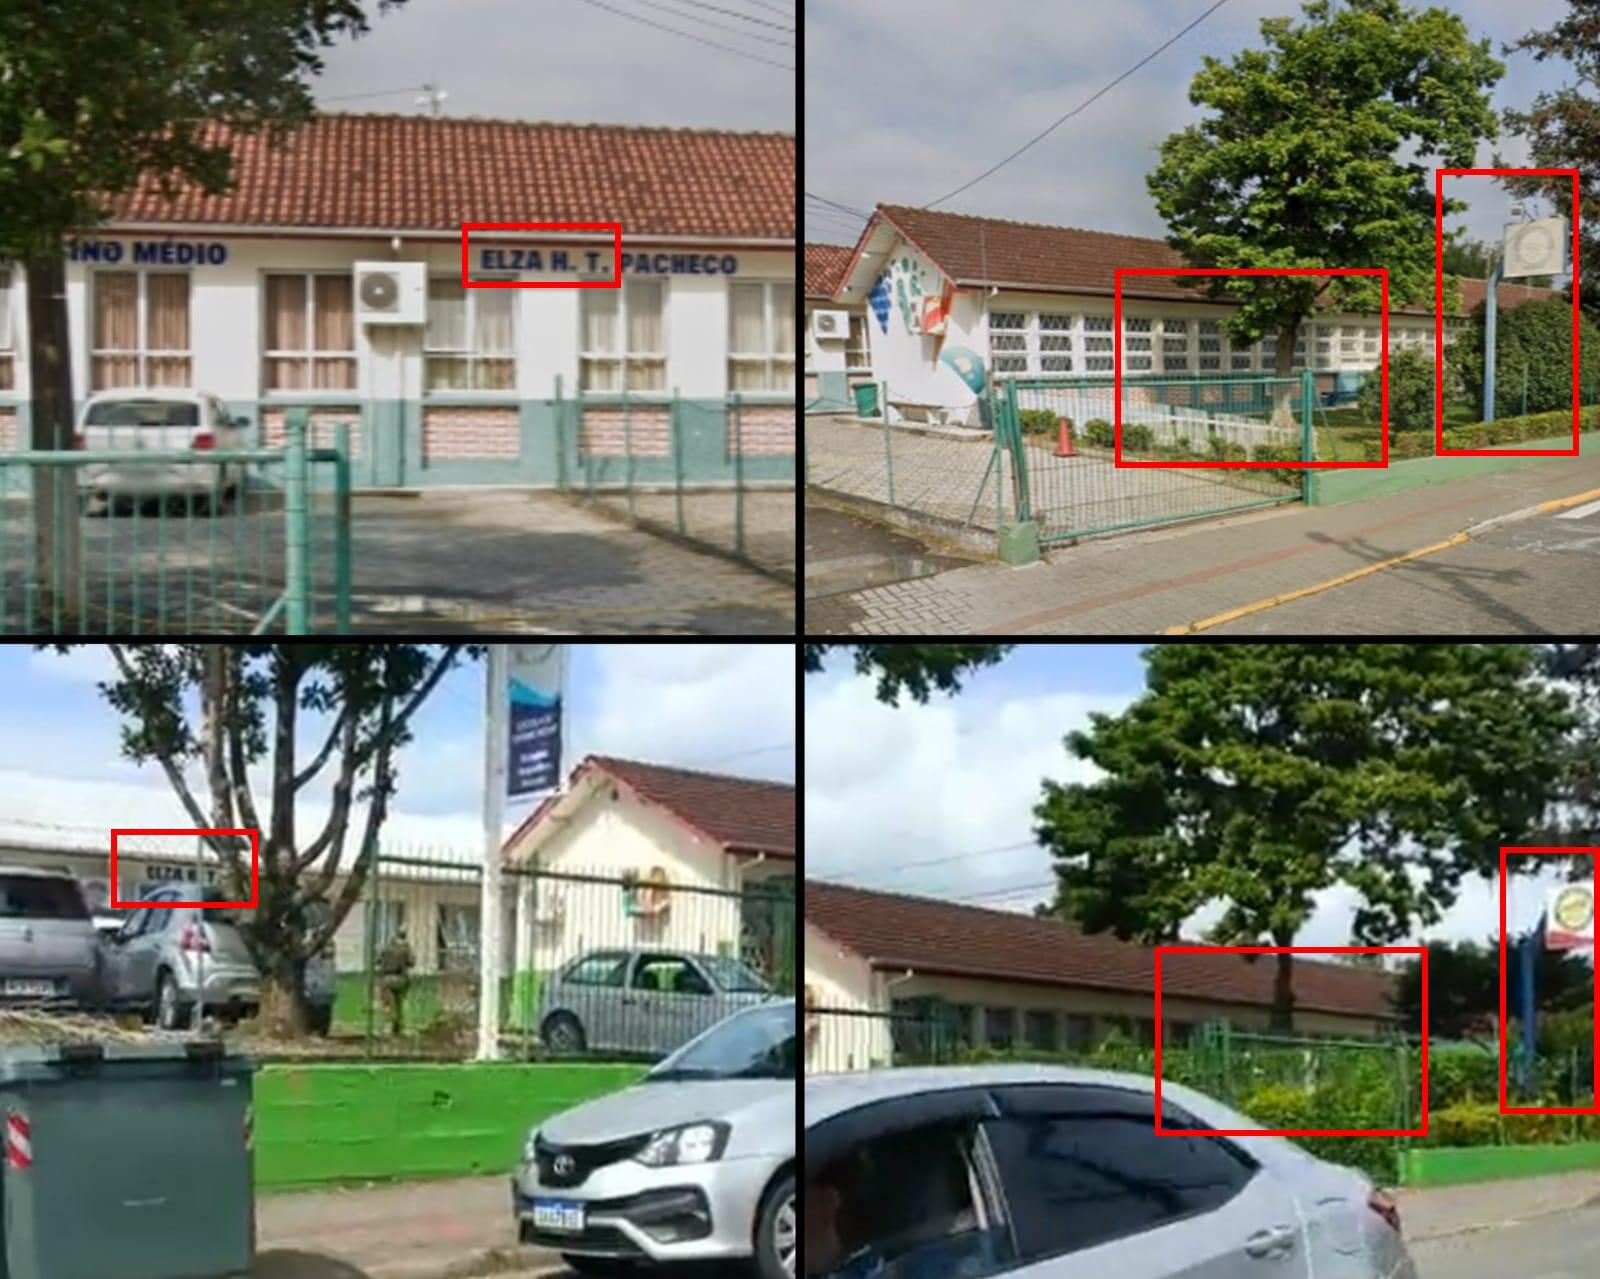 Comparativo entre frames do vídeo (abaixo) e imagens do Google Mapas (acima) mostra elementos idênticos, o que prova que o registro foi feito em frente a uma escola de Blumenau